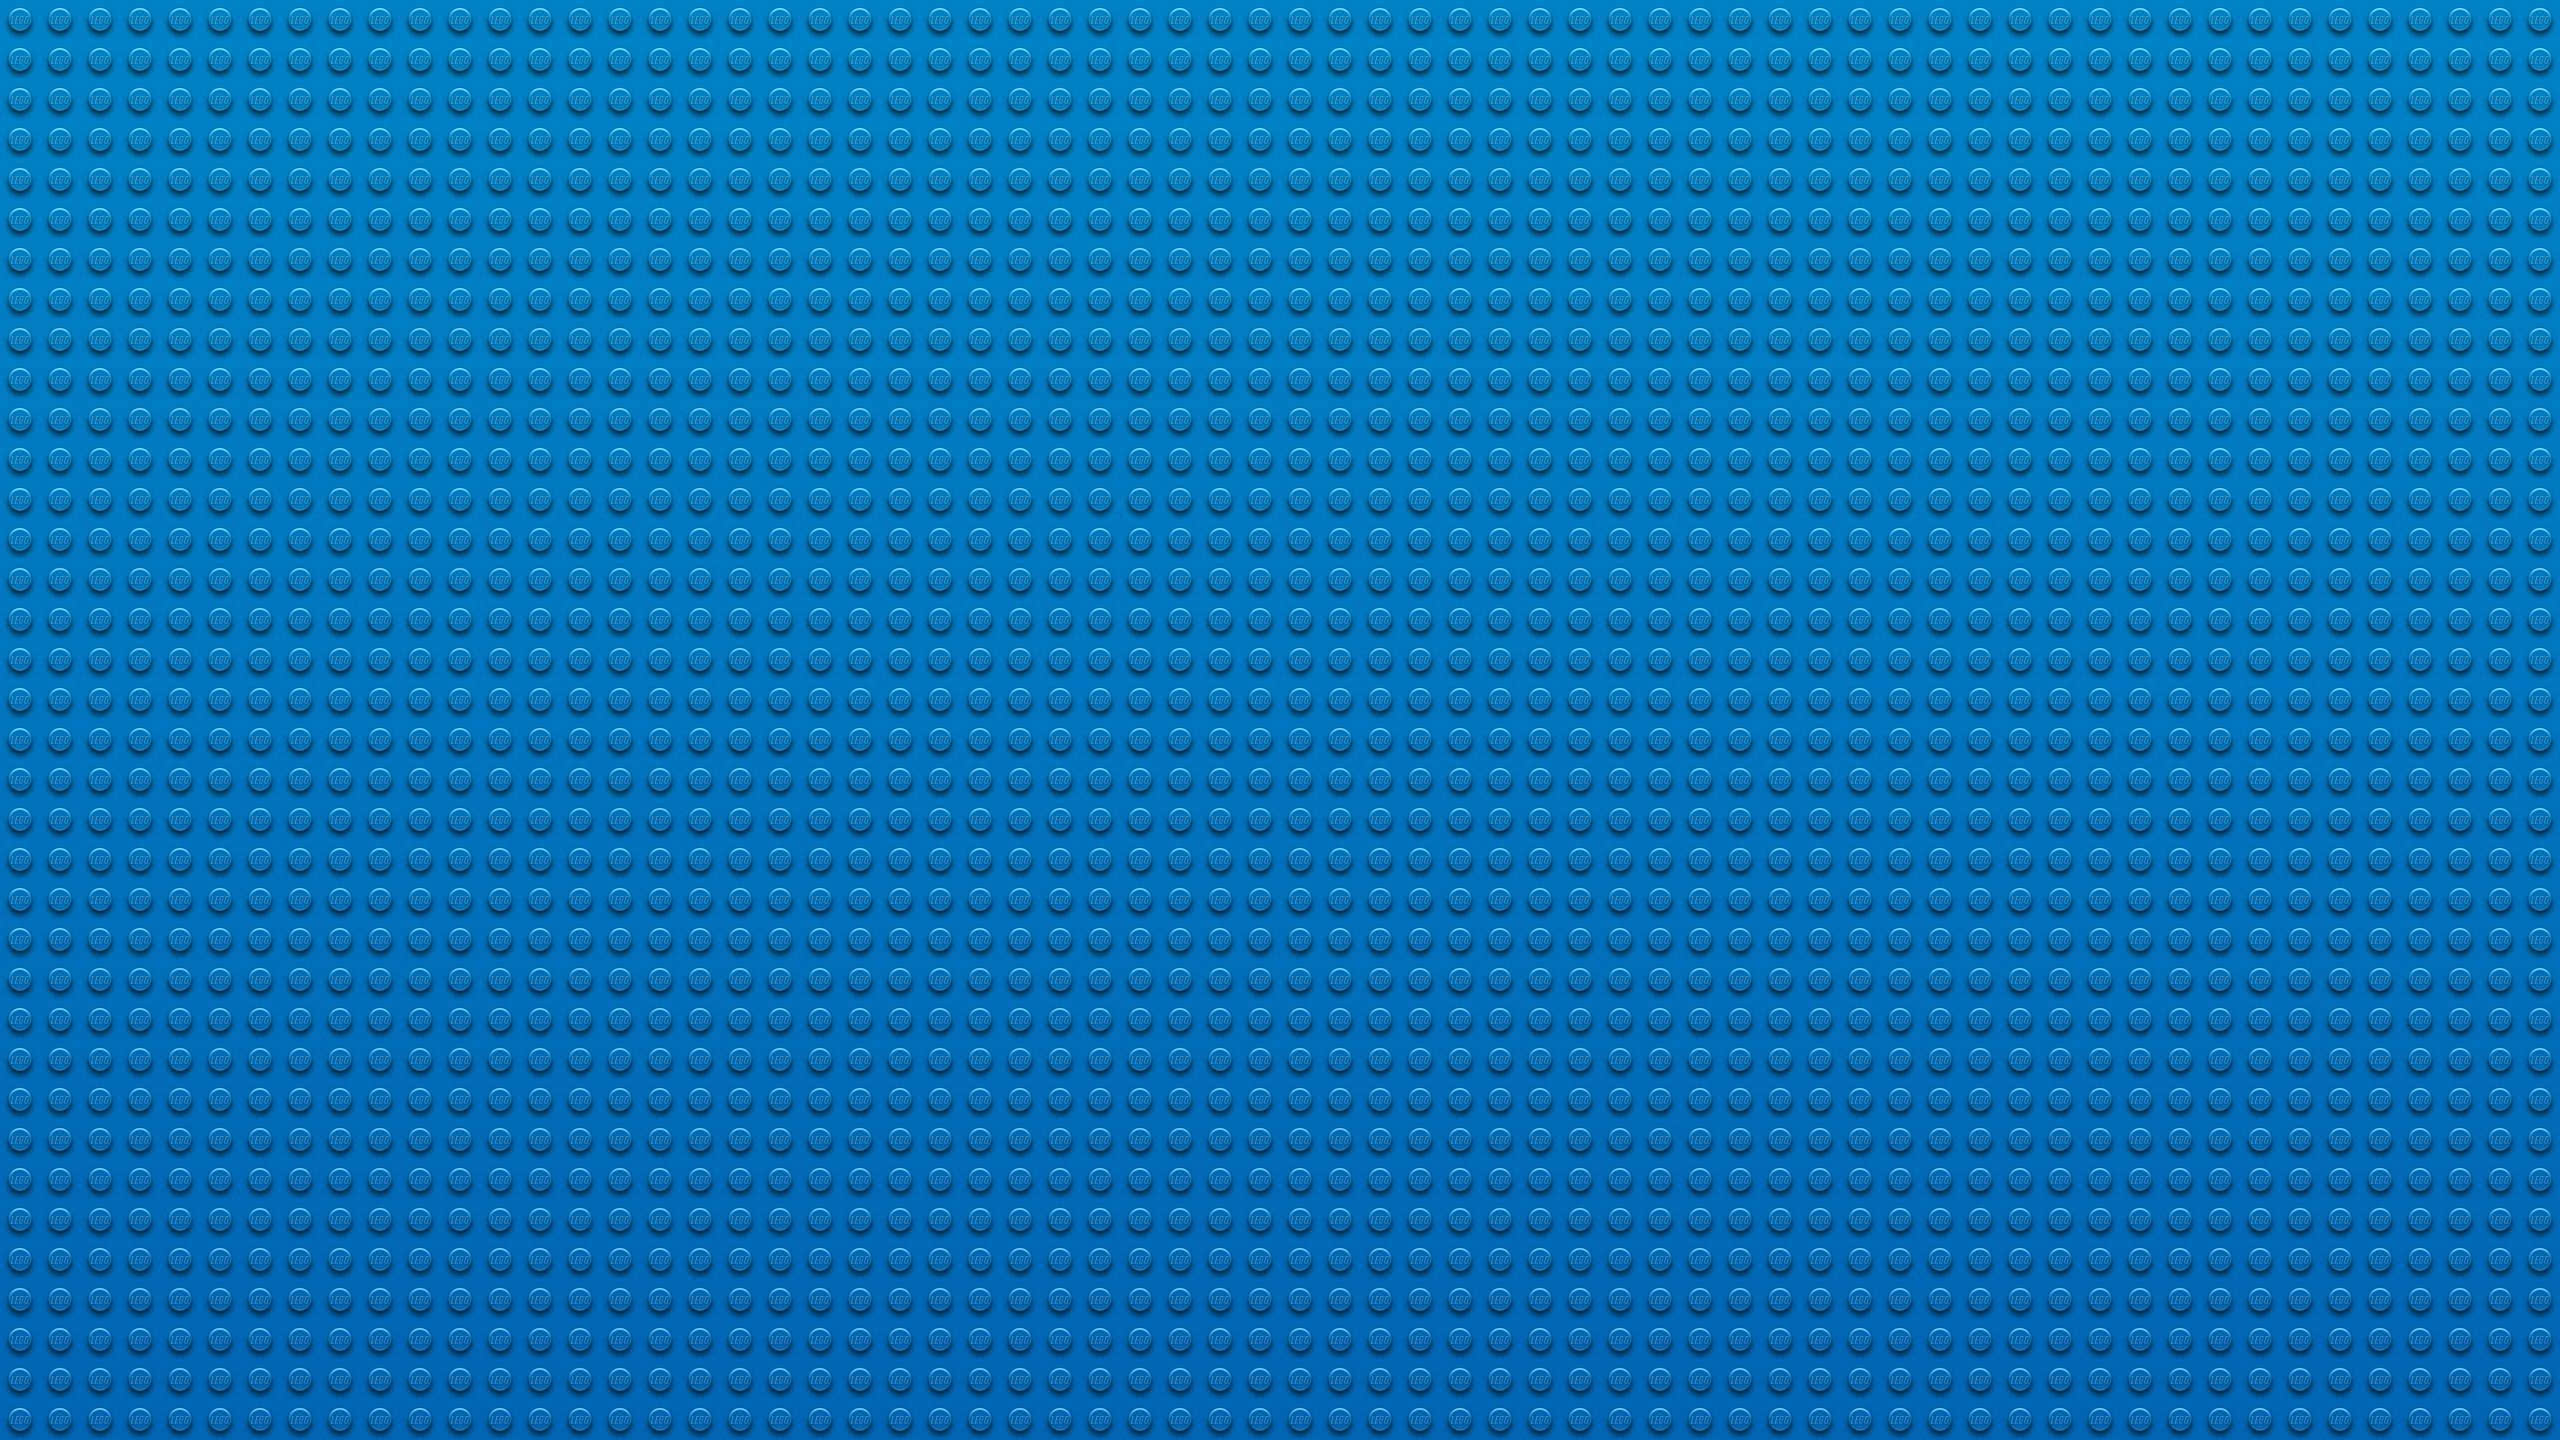 lego wallpaper